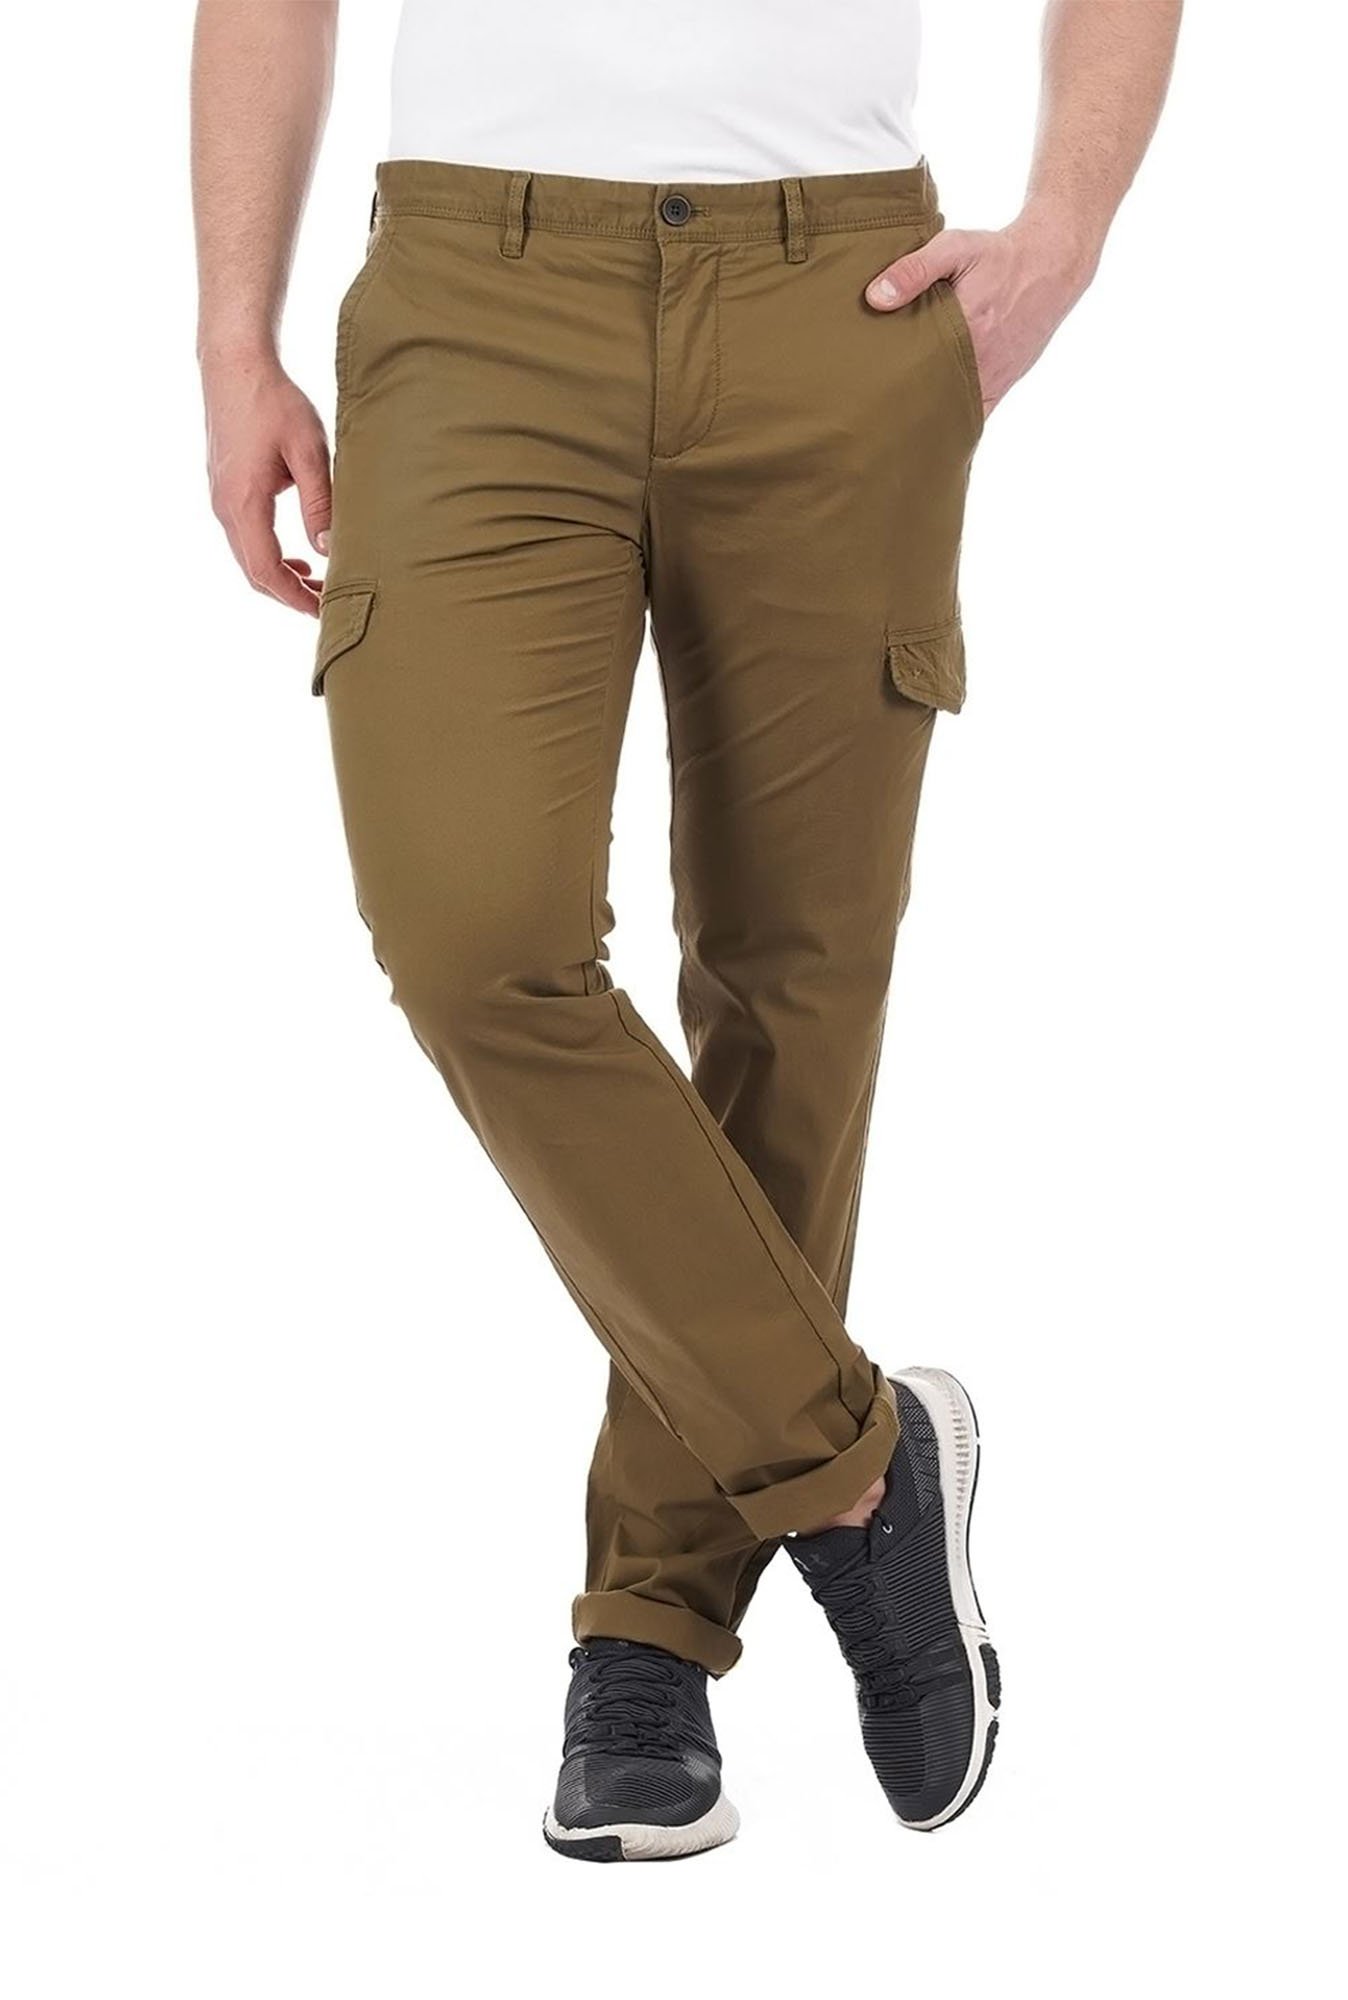 Buy Wheat Beige Cargo Pants Online for Men in India | Men's Cargo Pants